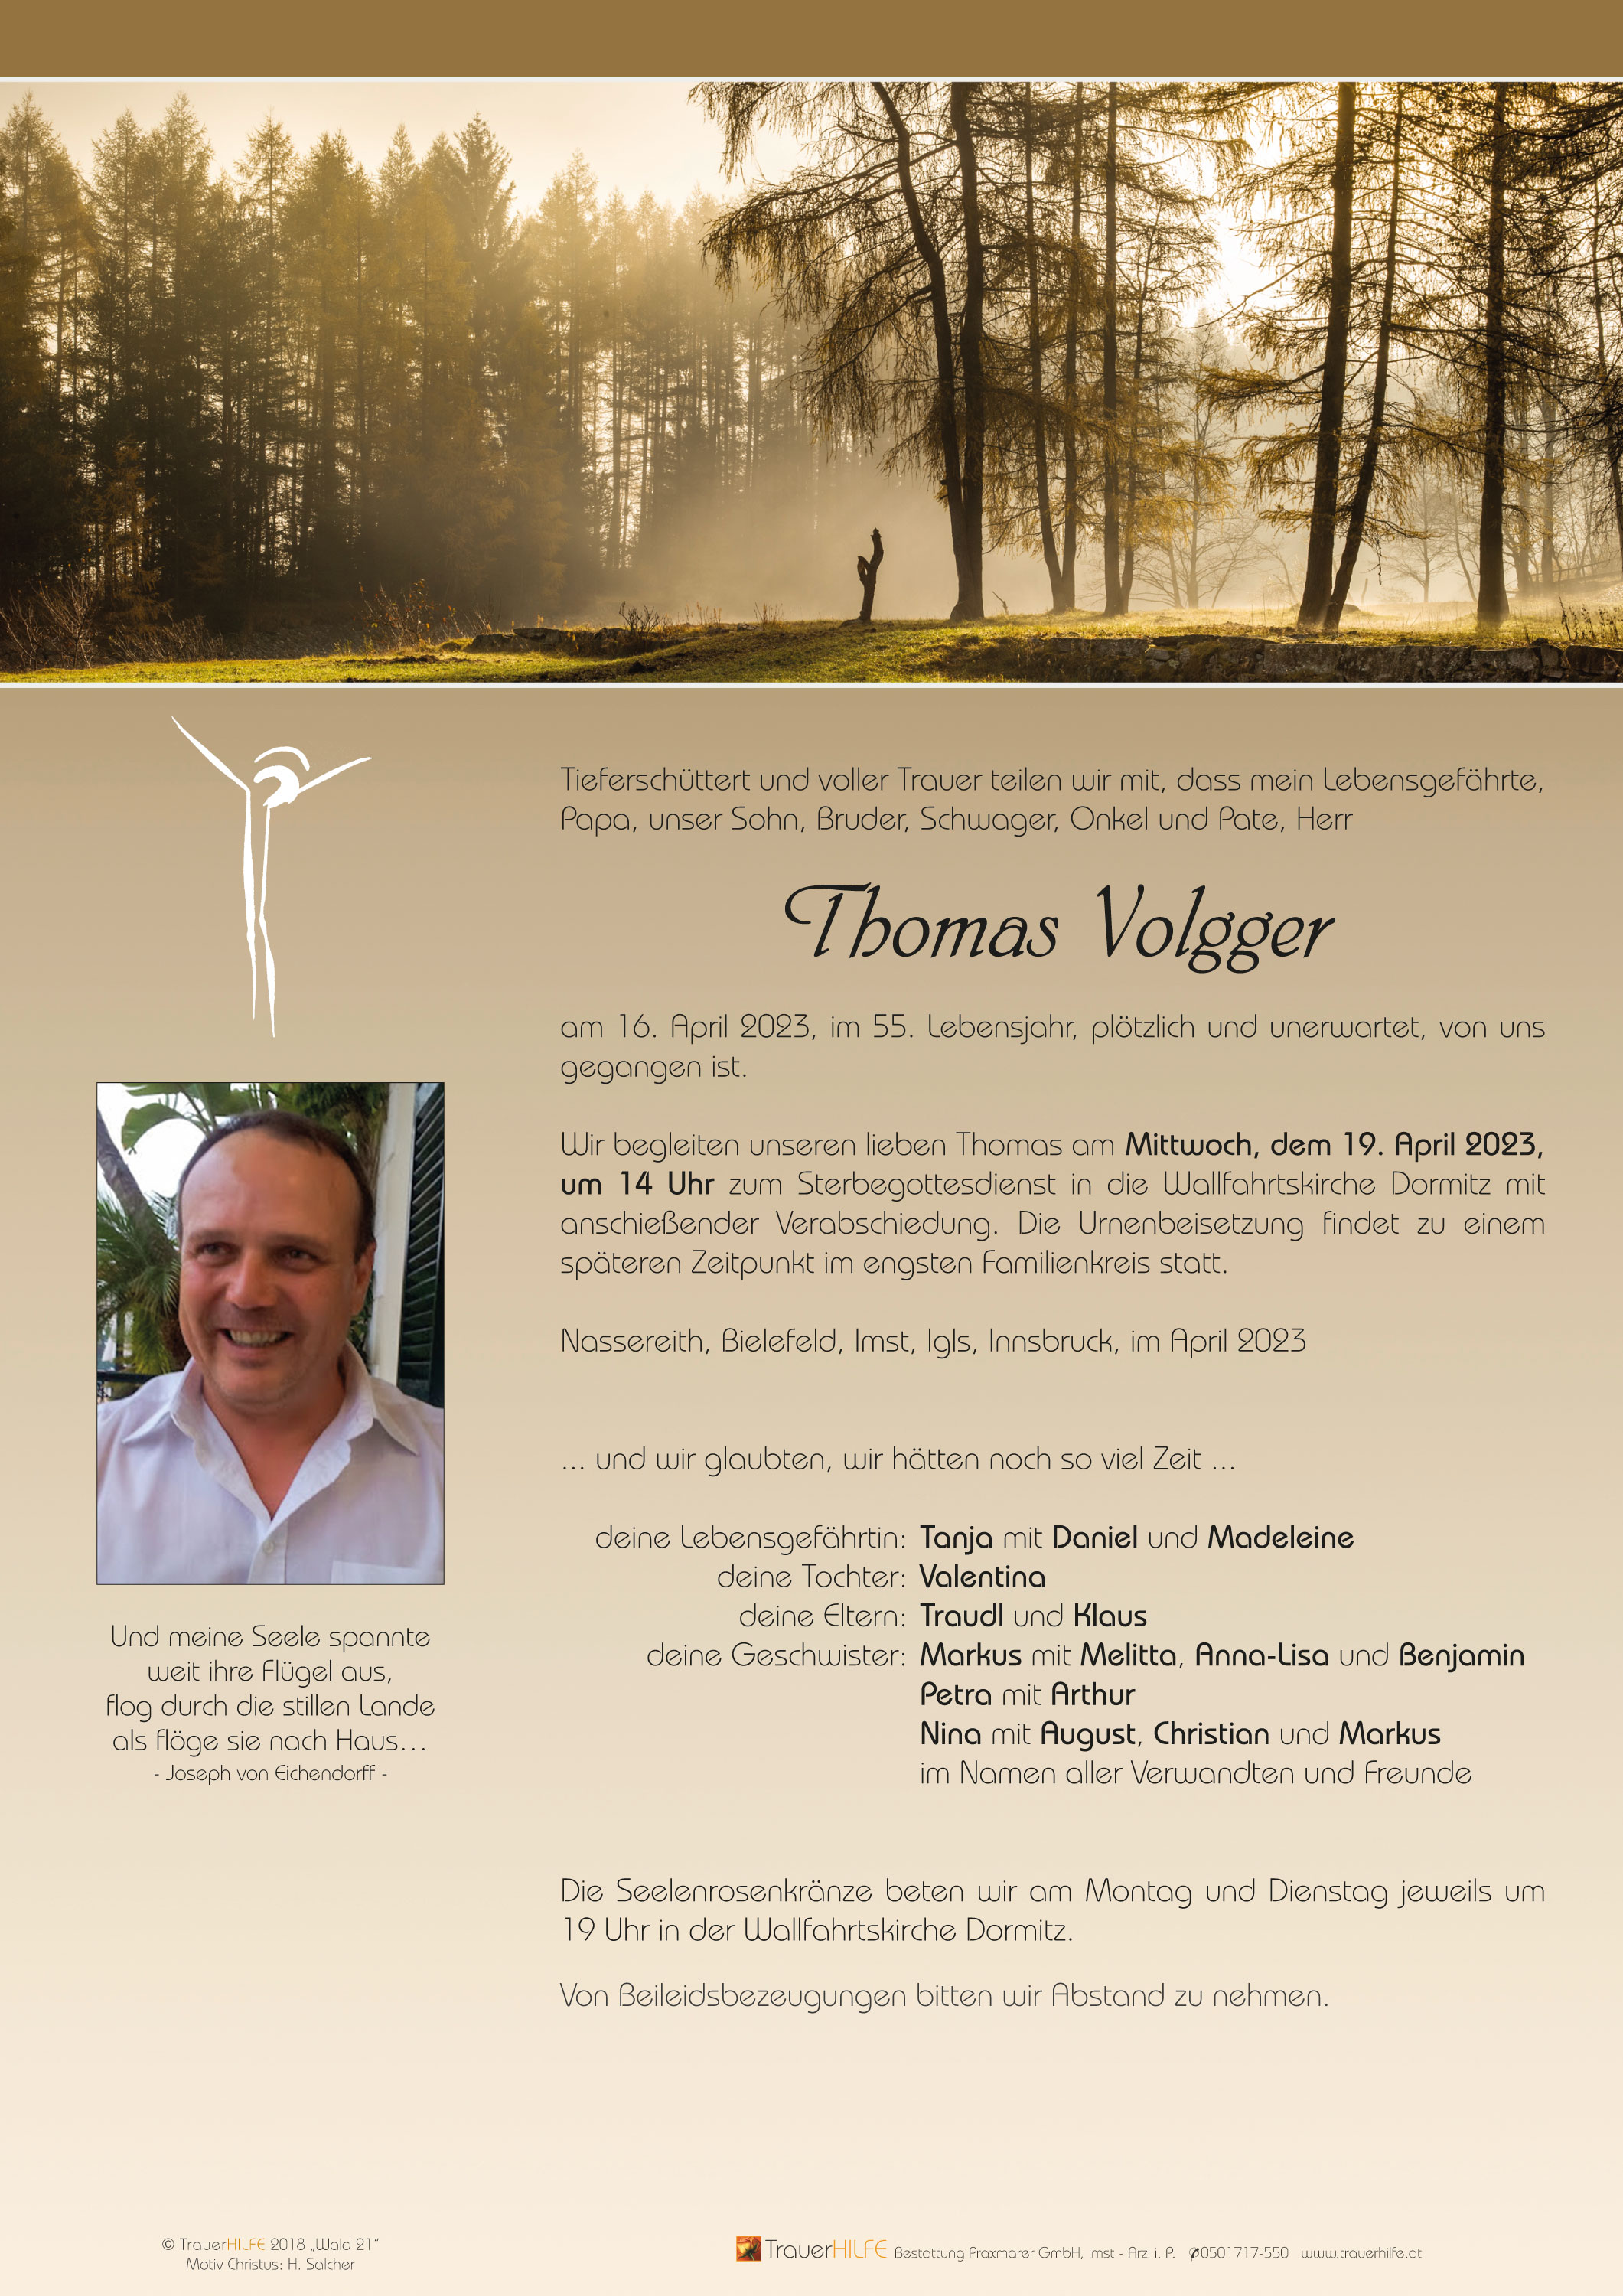 Thomas Volgger